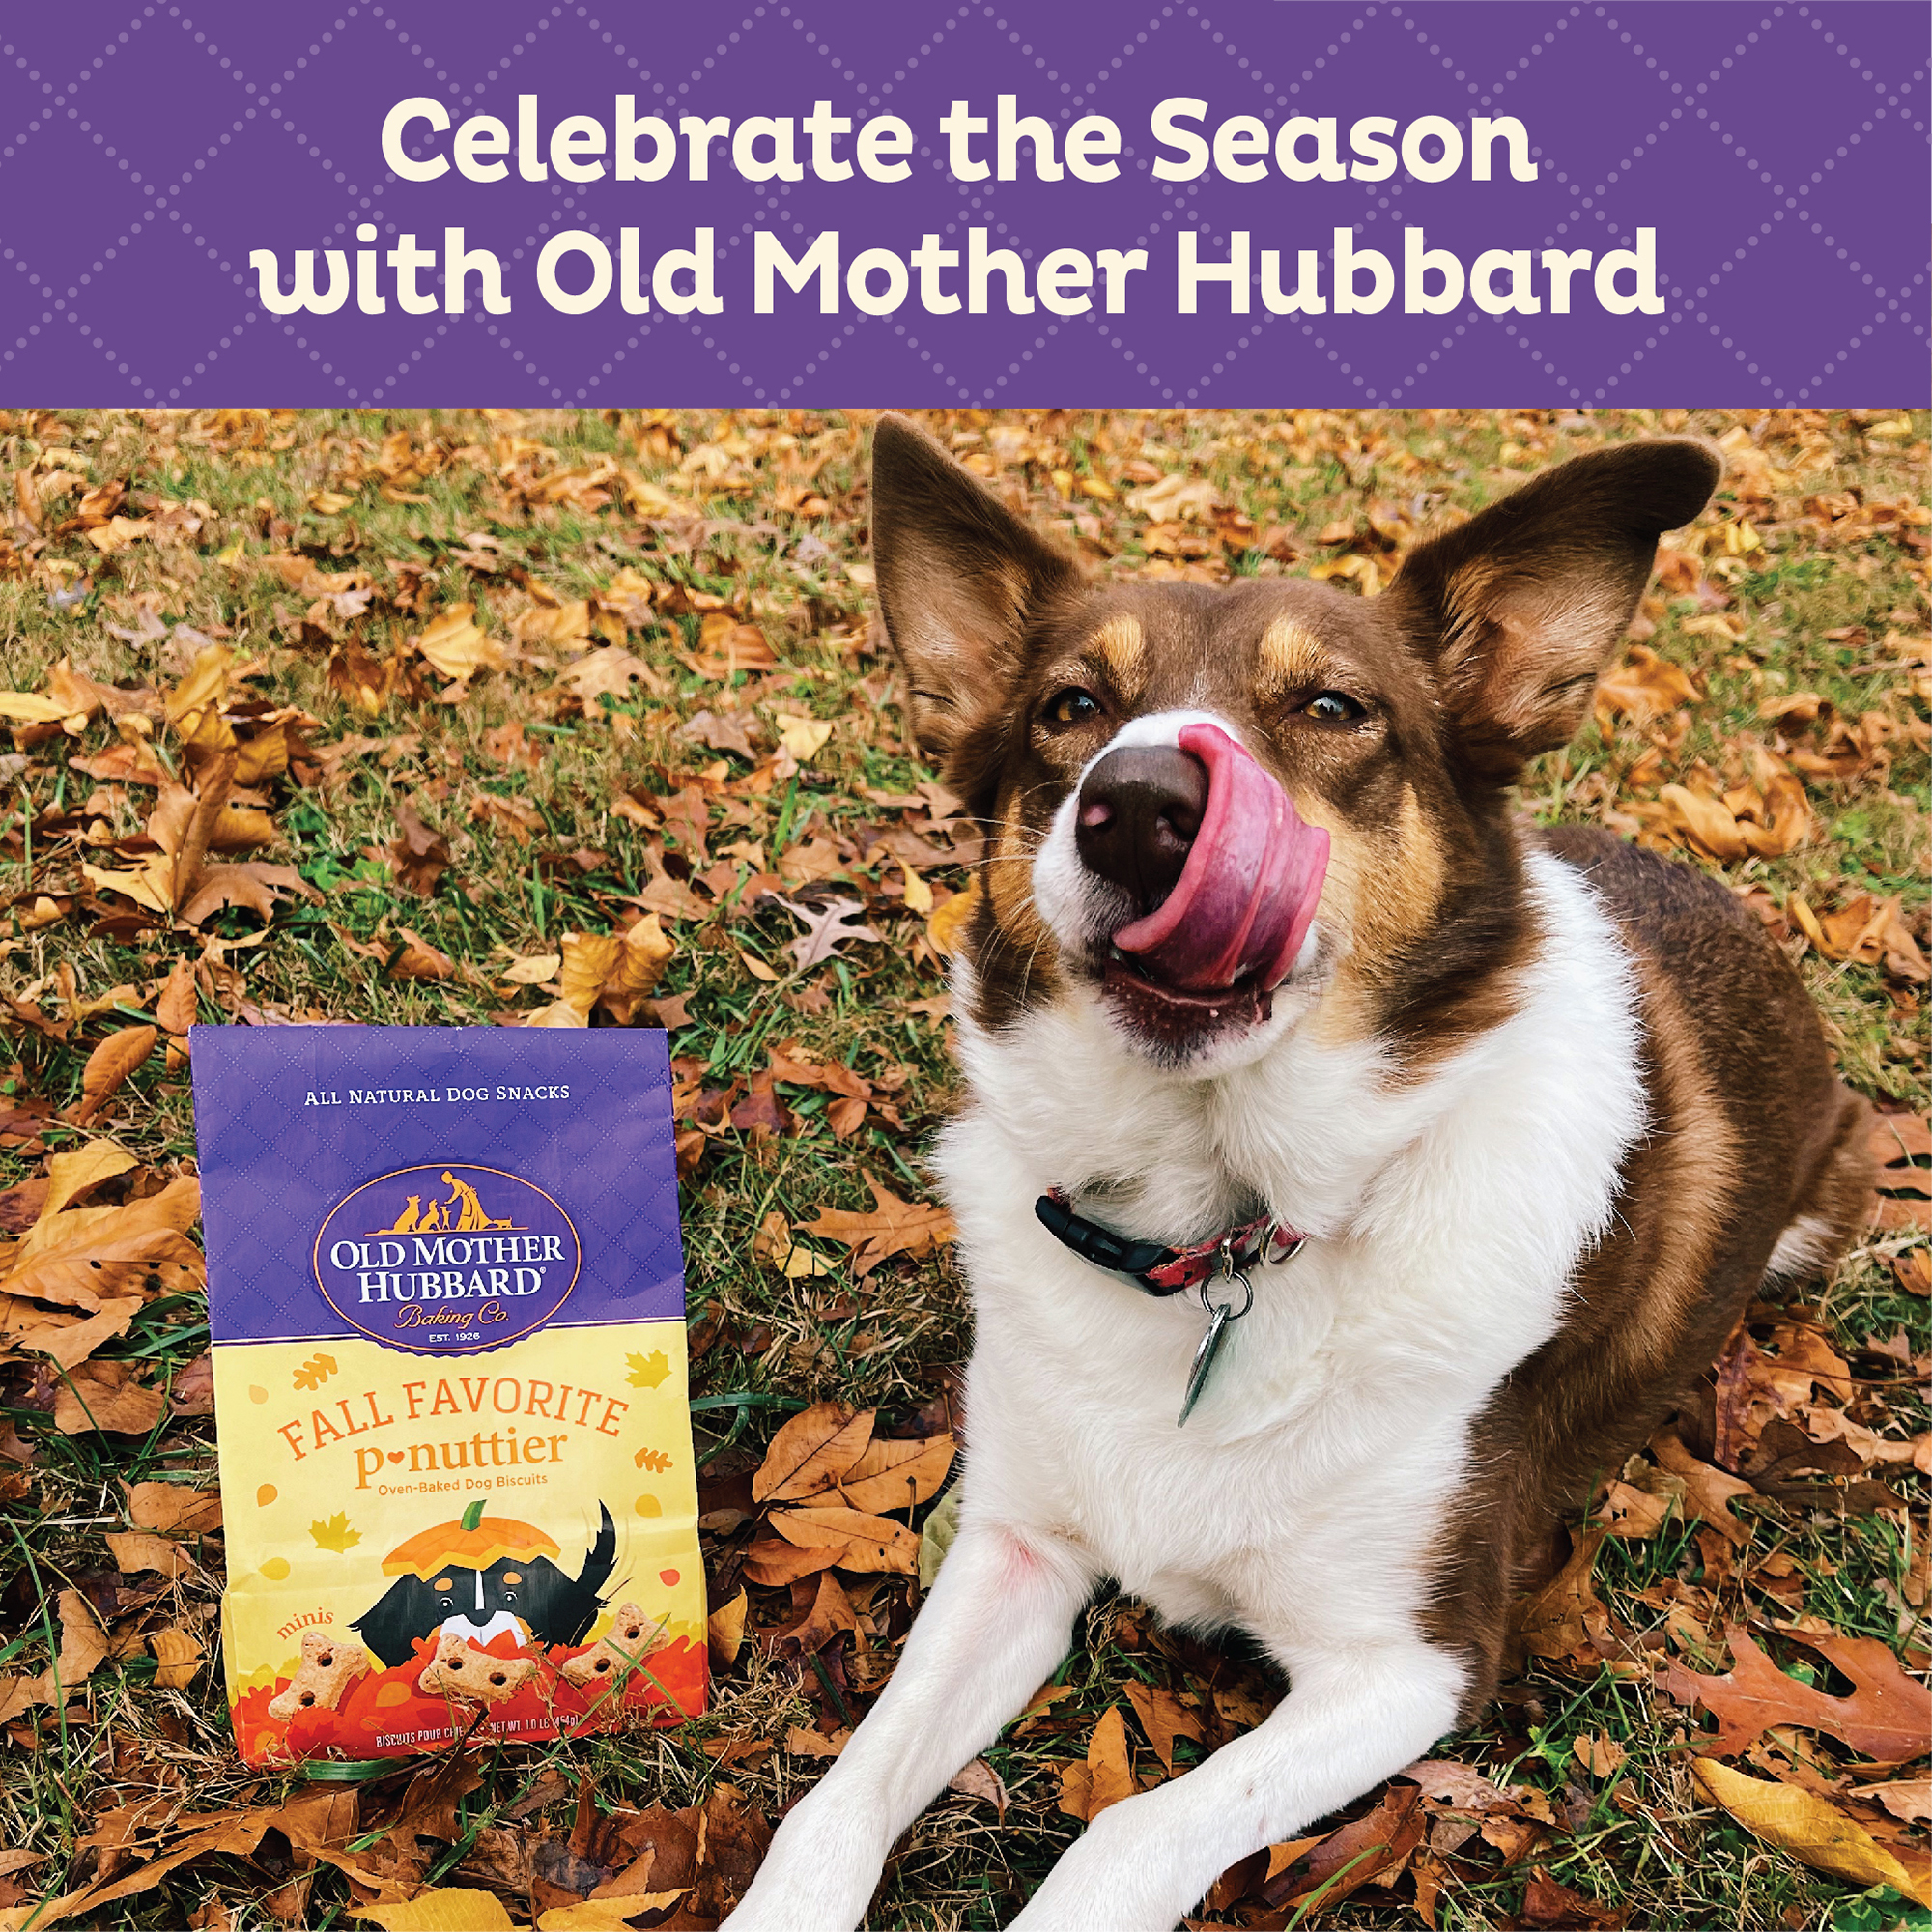 Old Mother Hubbard Seasonal Fall Favorite P-Nuttier